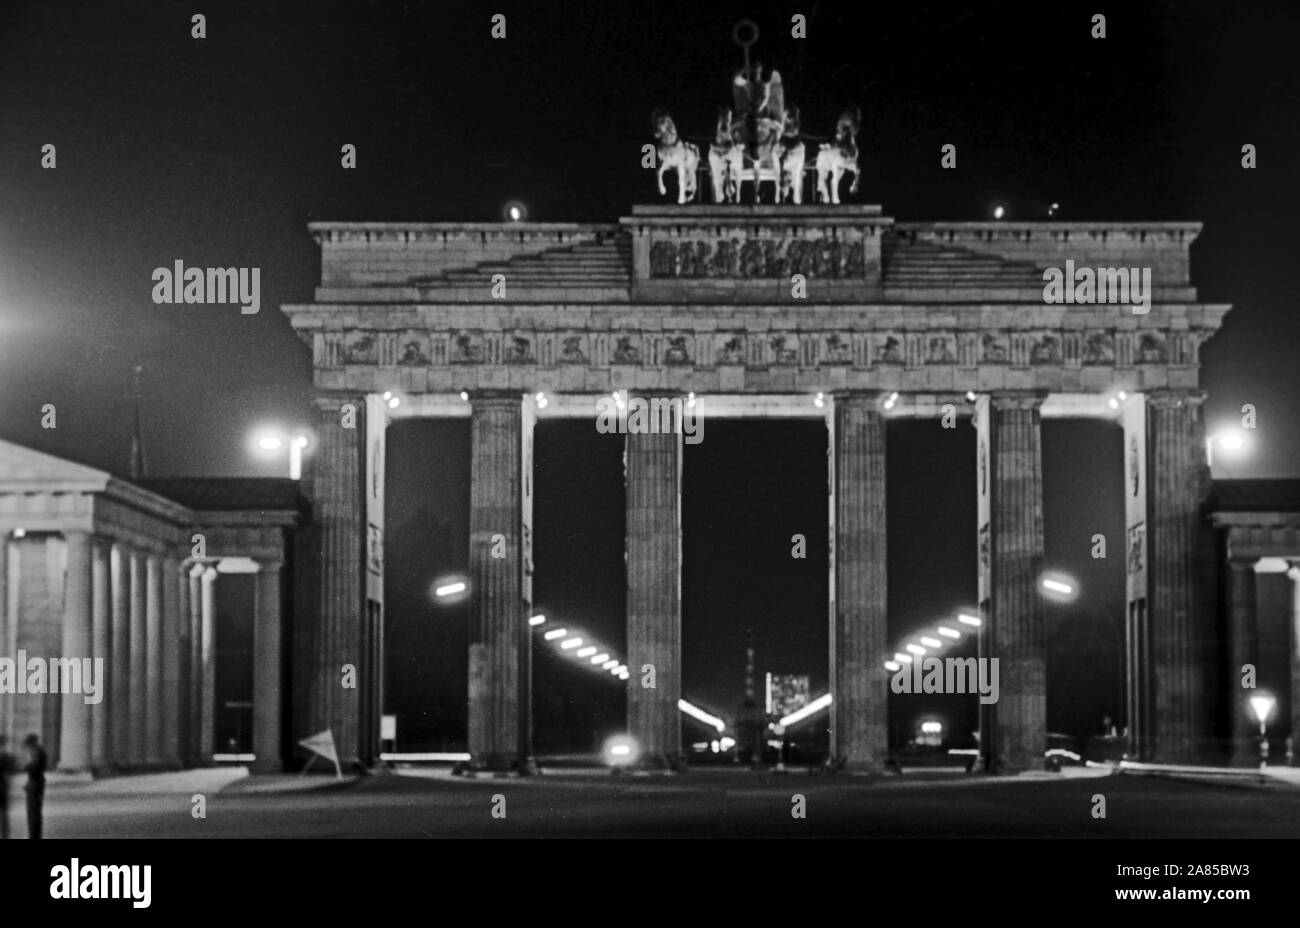 Das Brandenburger Tor bei Nacht in Berlin Zwei Wochen vor dem Mauerbau, Deutschland 1961. La porta di Brandeburgo a Berlino di notte, due settimane prima che il muro è stato costruito, Germania 1961. Foto Stock